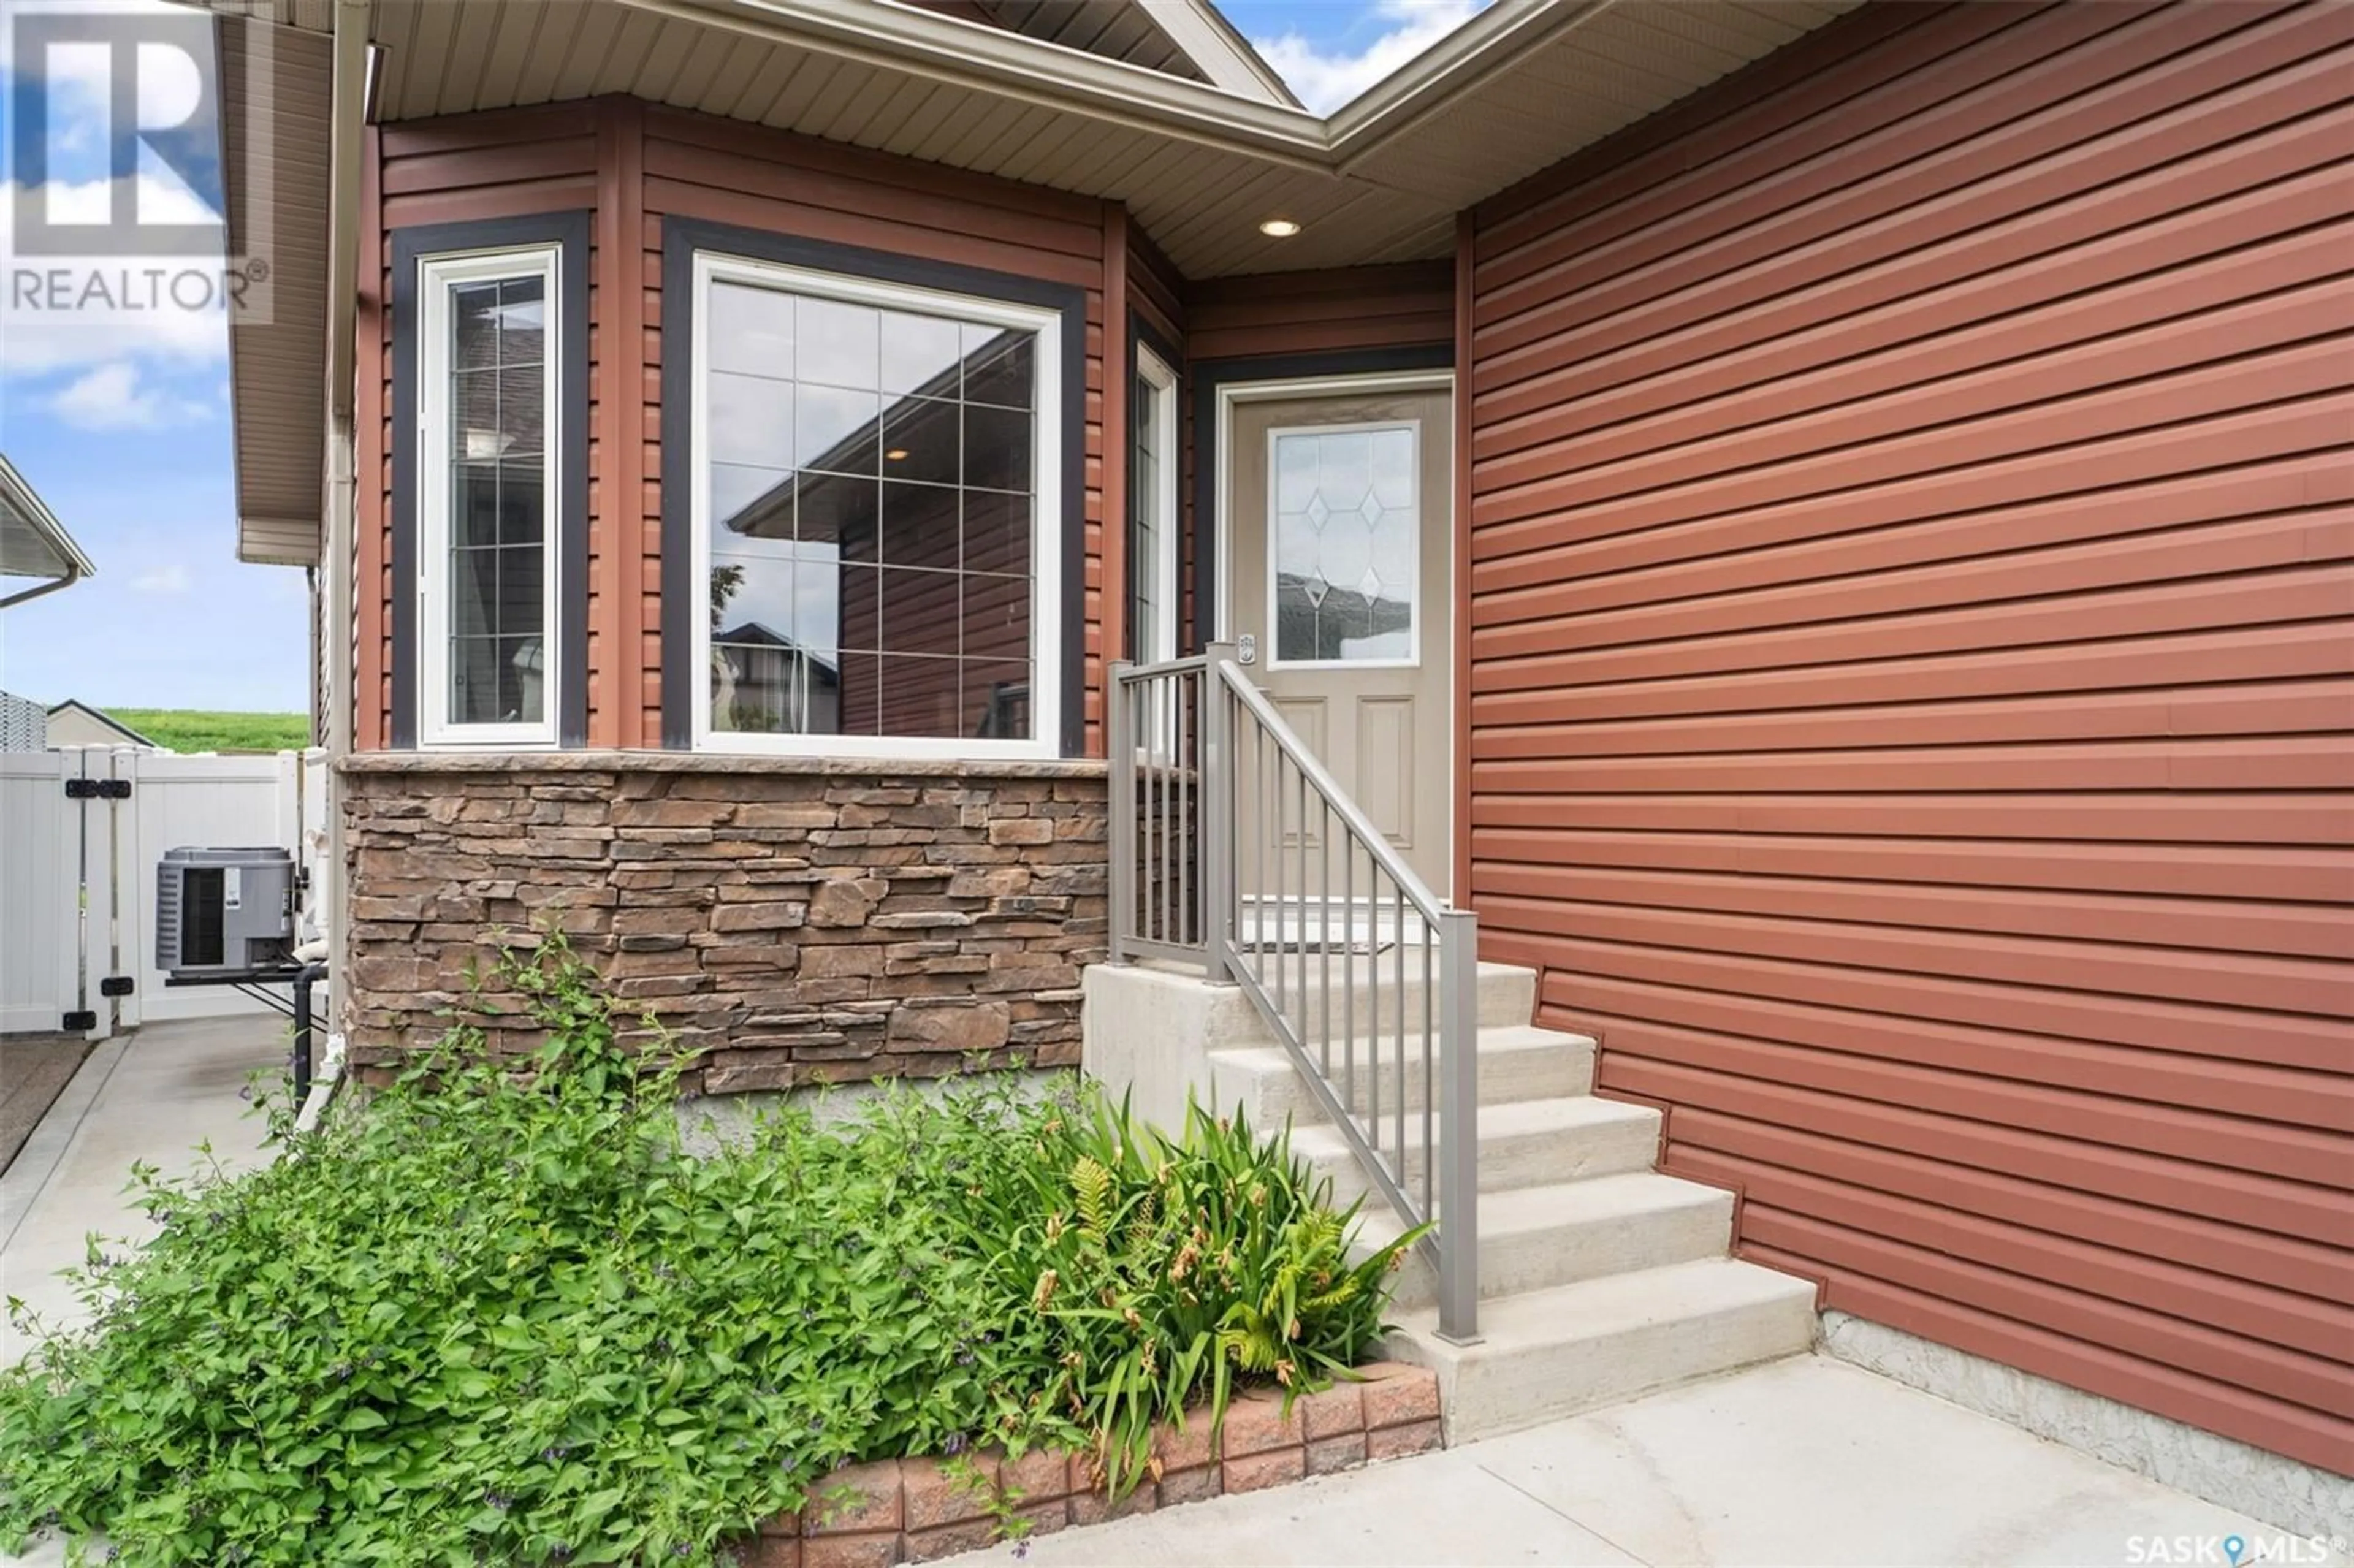 Home with brick exterior material for 919 Korol CRESCENT, Saskatoon Saskatchewan S7R0E4